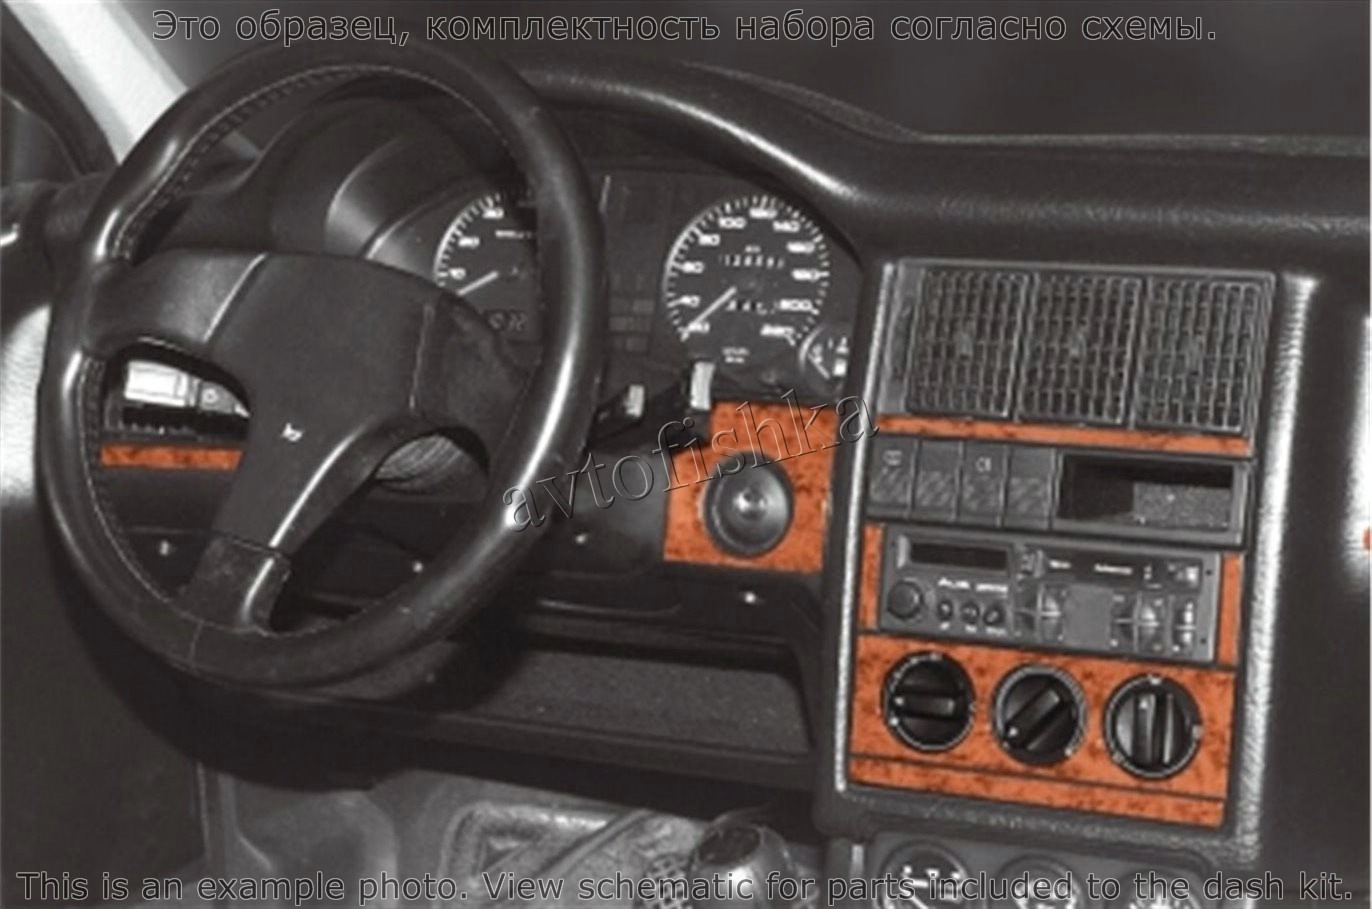 Тюнинг Ауди 80 (Audi 80) своими руками – фото, примеры, советы, видео